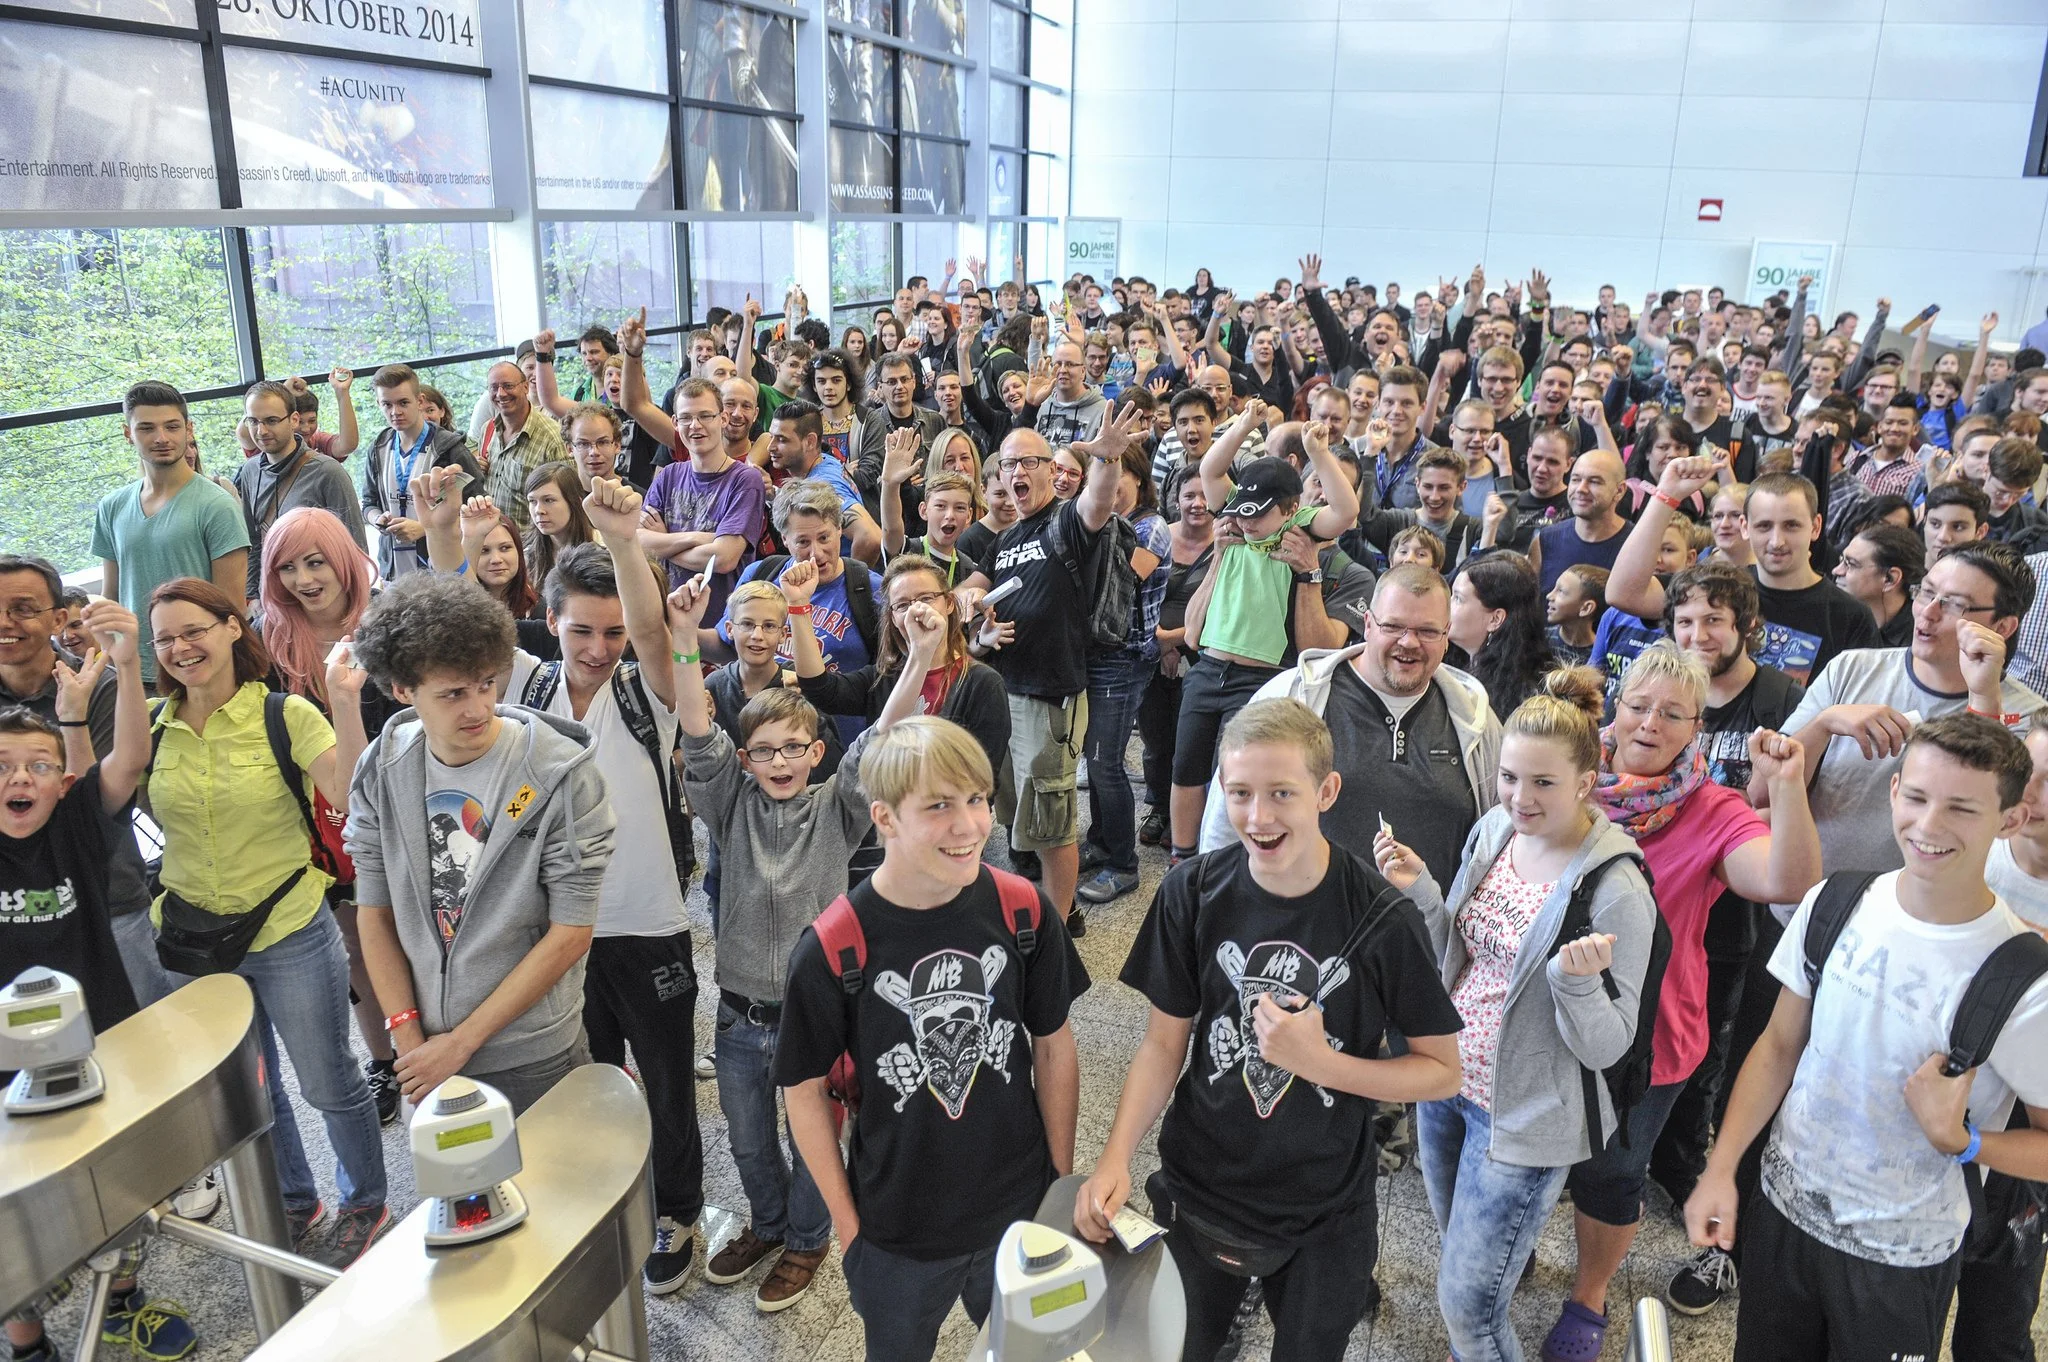 Gamescom 2014, крупнейшая игровая выставка Европы, завершена. Сотни тысяч людей из десятков стран съехались в немецкий Кельн, чтобы своими глазами увидеть игры, которые определят будущее индустрии.